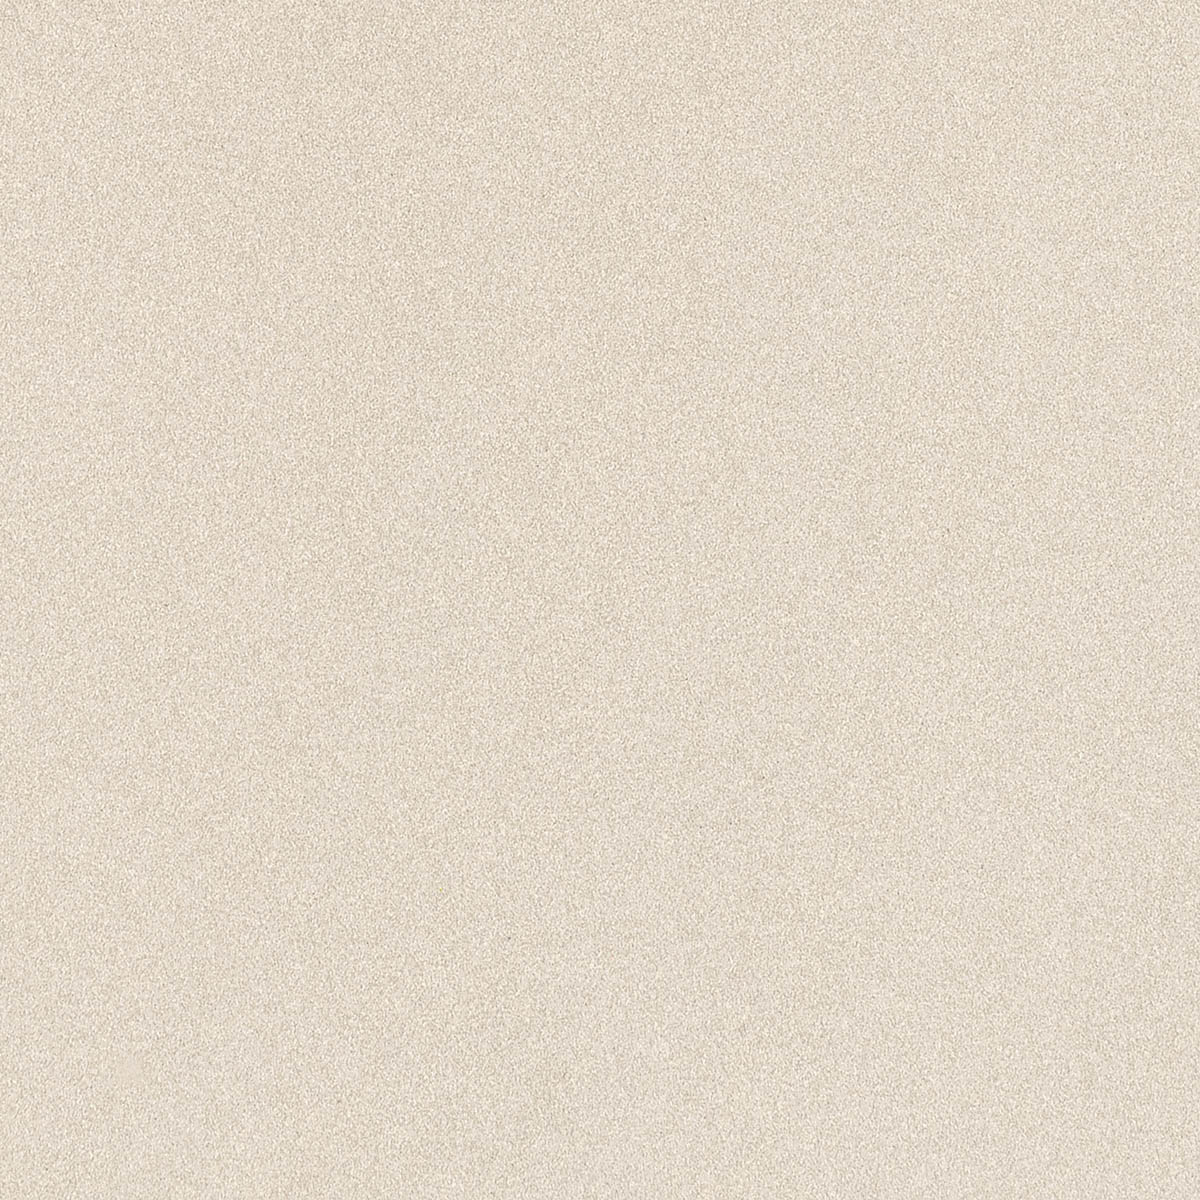 Imola Parade Bianco Levigato Flat Glossy Bianco 166060 poliert glaenzend glatt 60x60cm rektifiziert 10,5mm